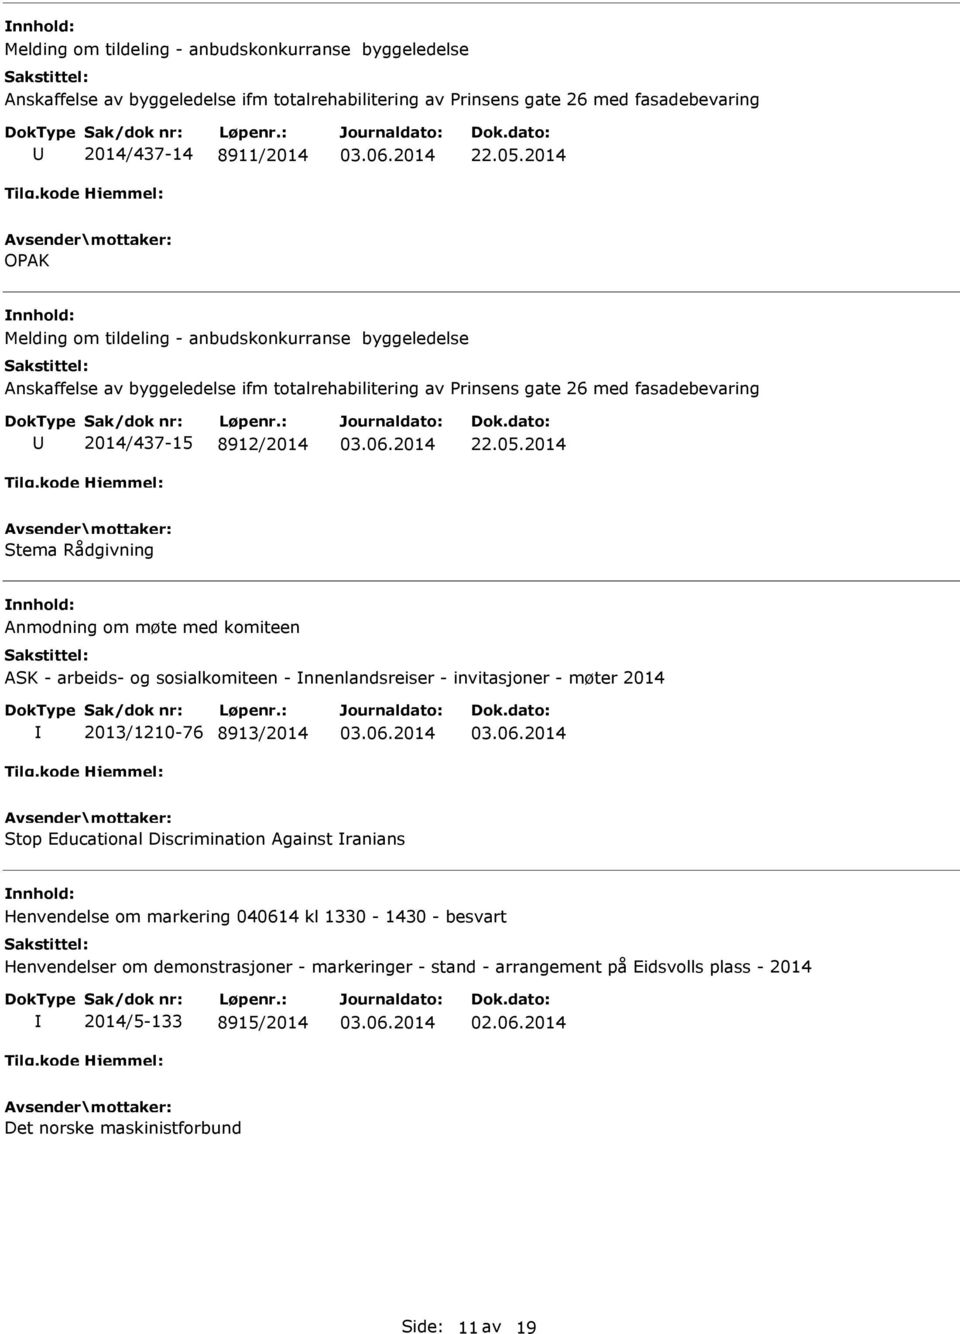 2014 Stema Rådgivning Anmodning om møte med komiteen ASK - arbeids- og sosialkomiteen - nnenlandsreiser - invitasjoner - møter 2014 2013/1210-76